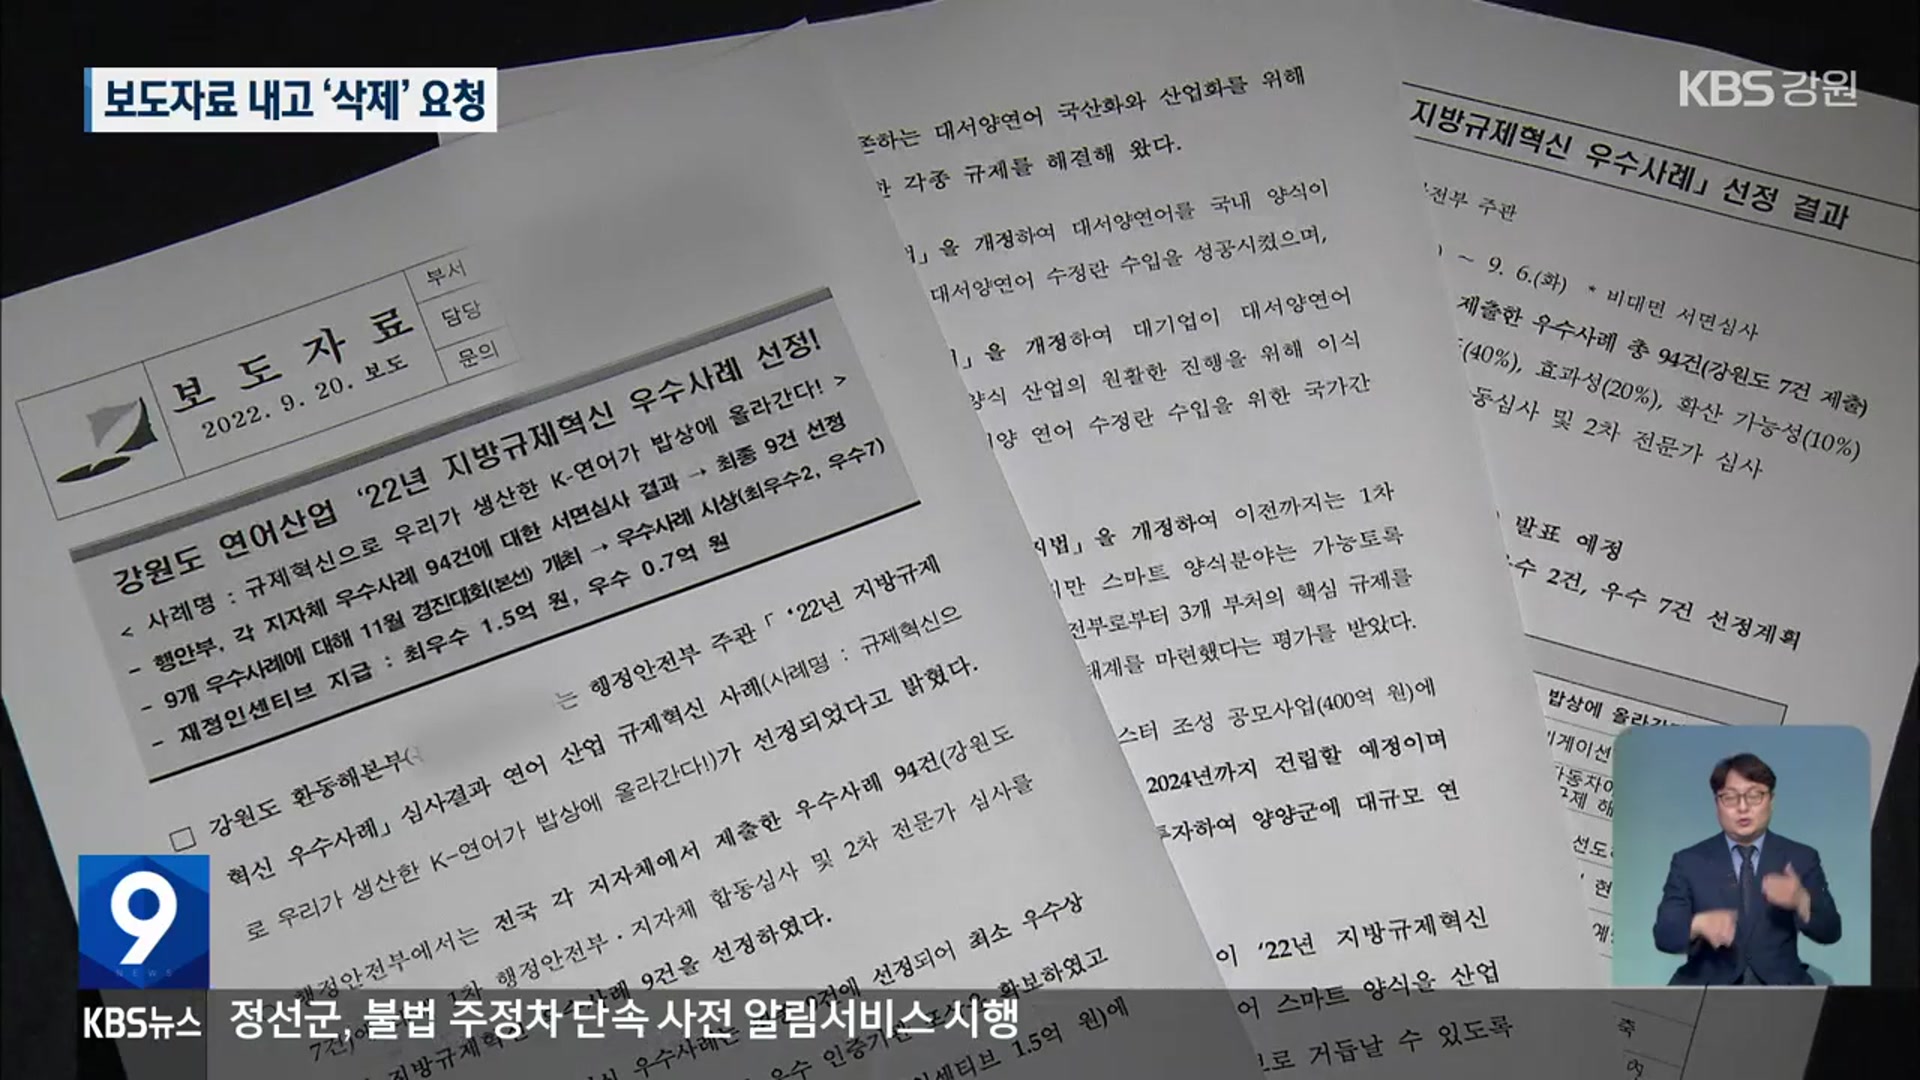 보도자료 배포 실수에 ‘기사 삭제’ 요청…우수사례 선정 취소?